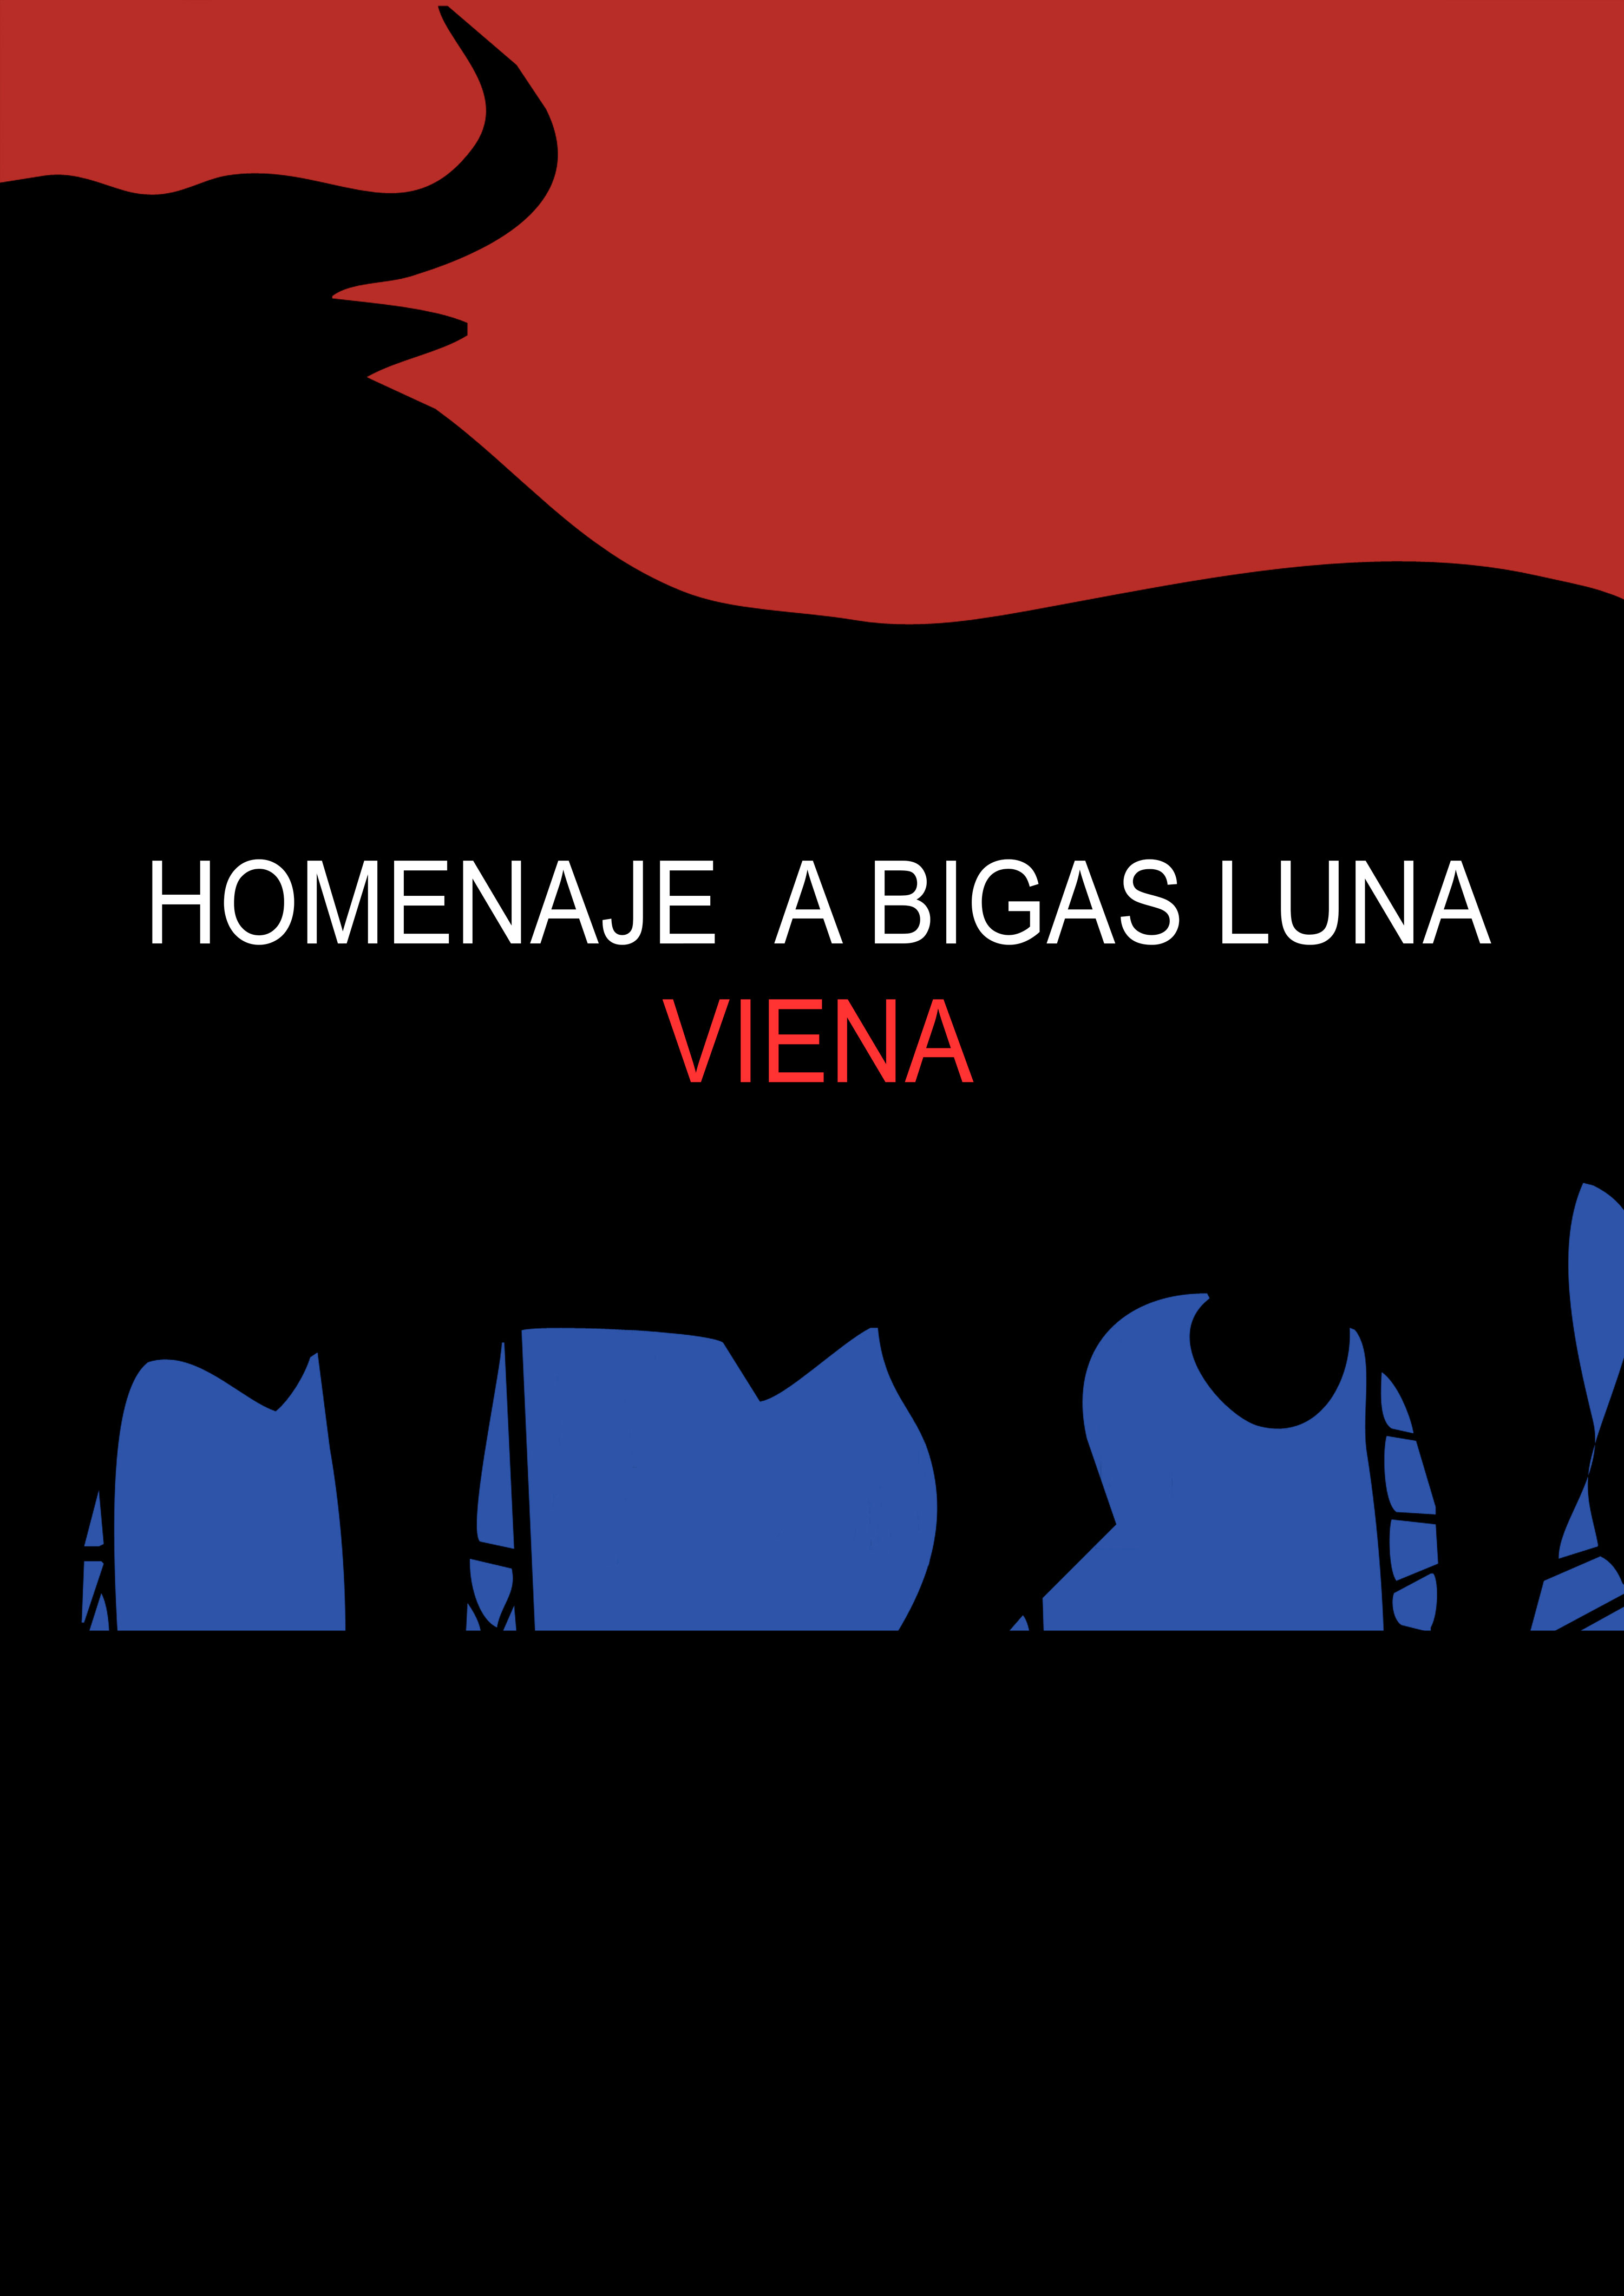 Das Erbe von Bigas Luna